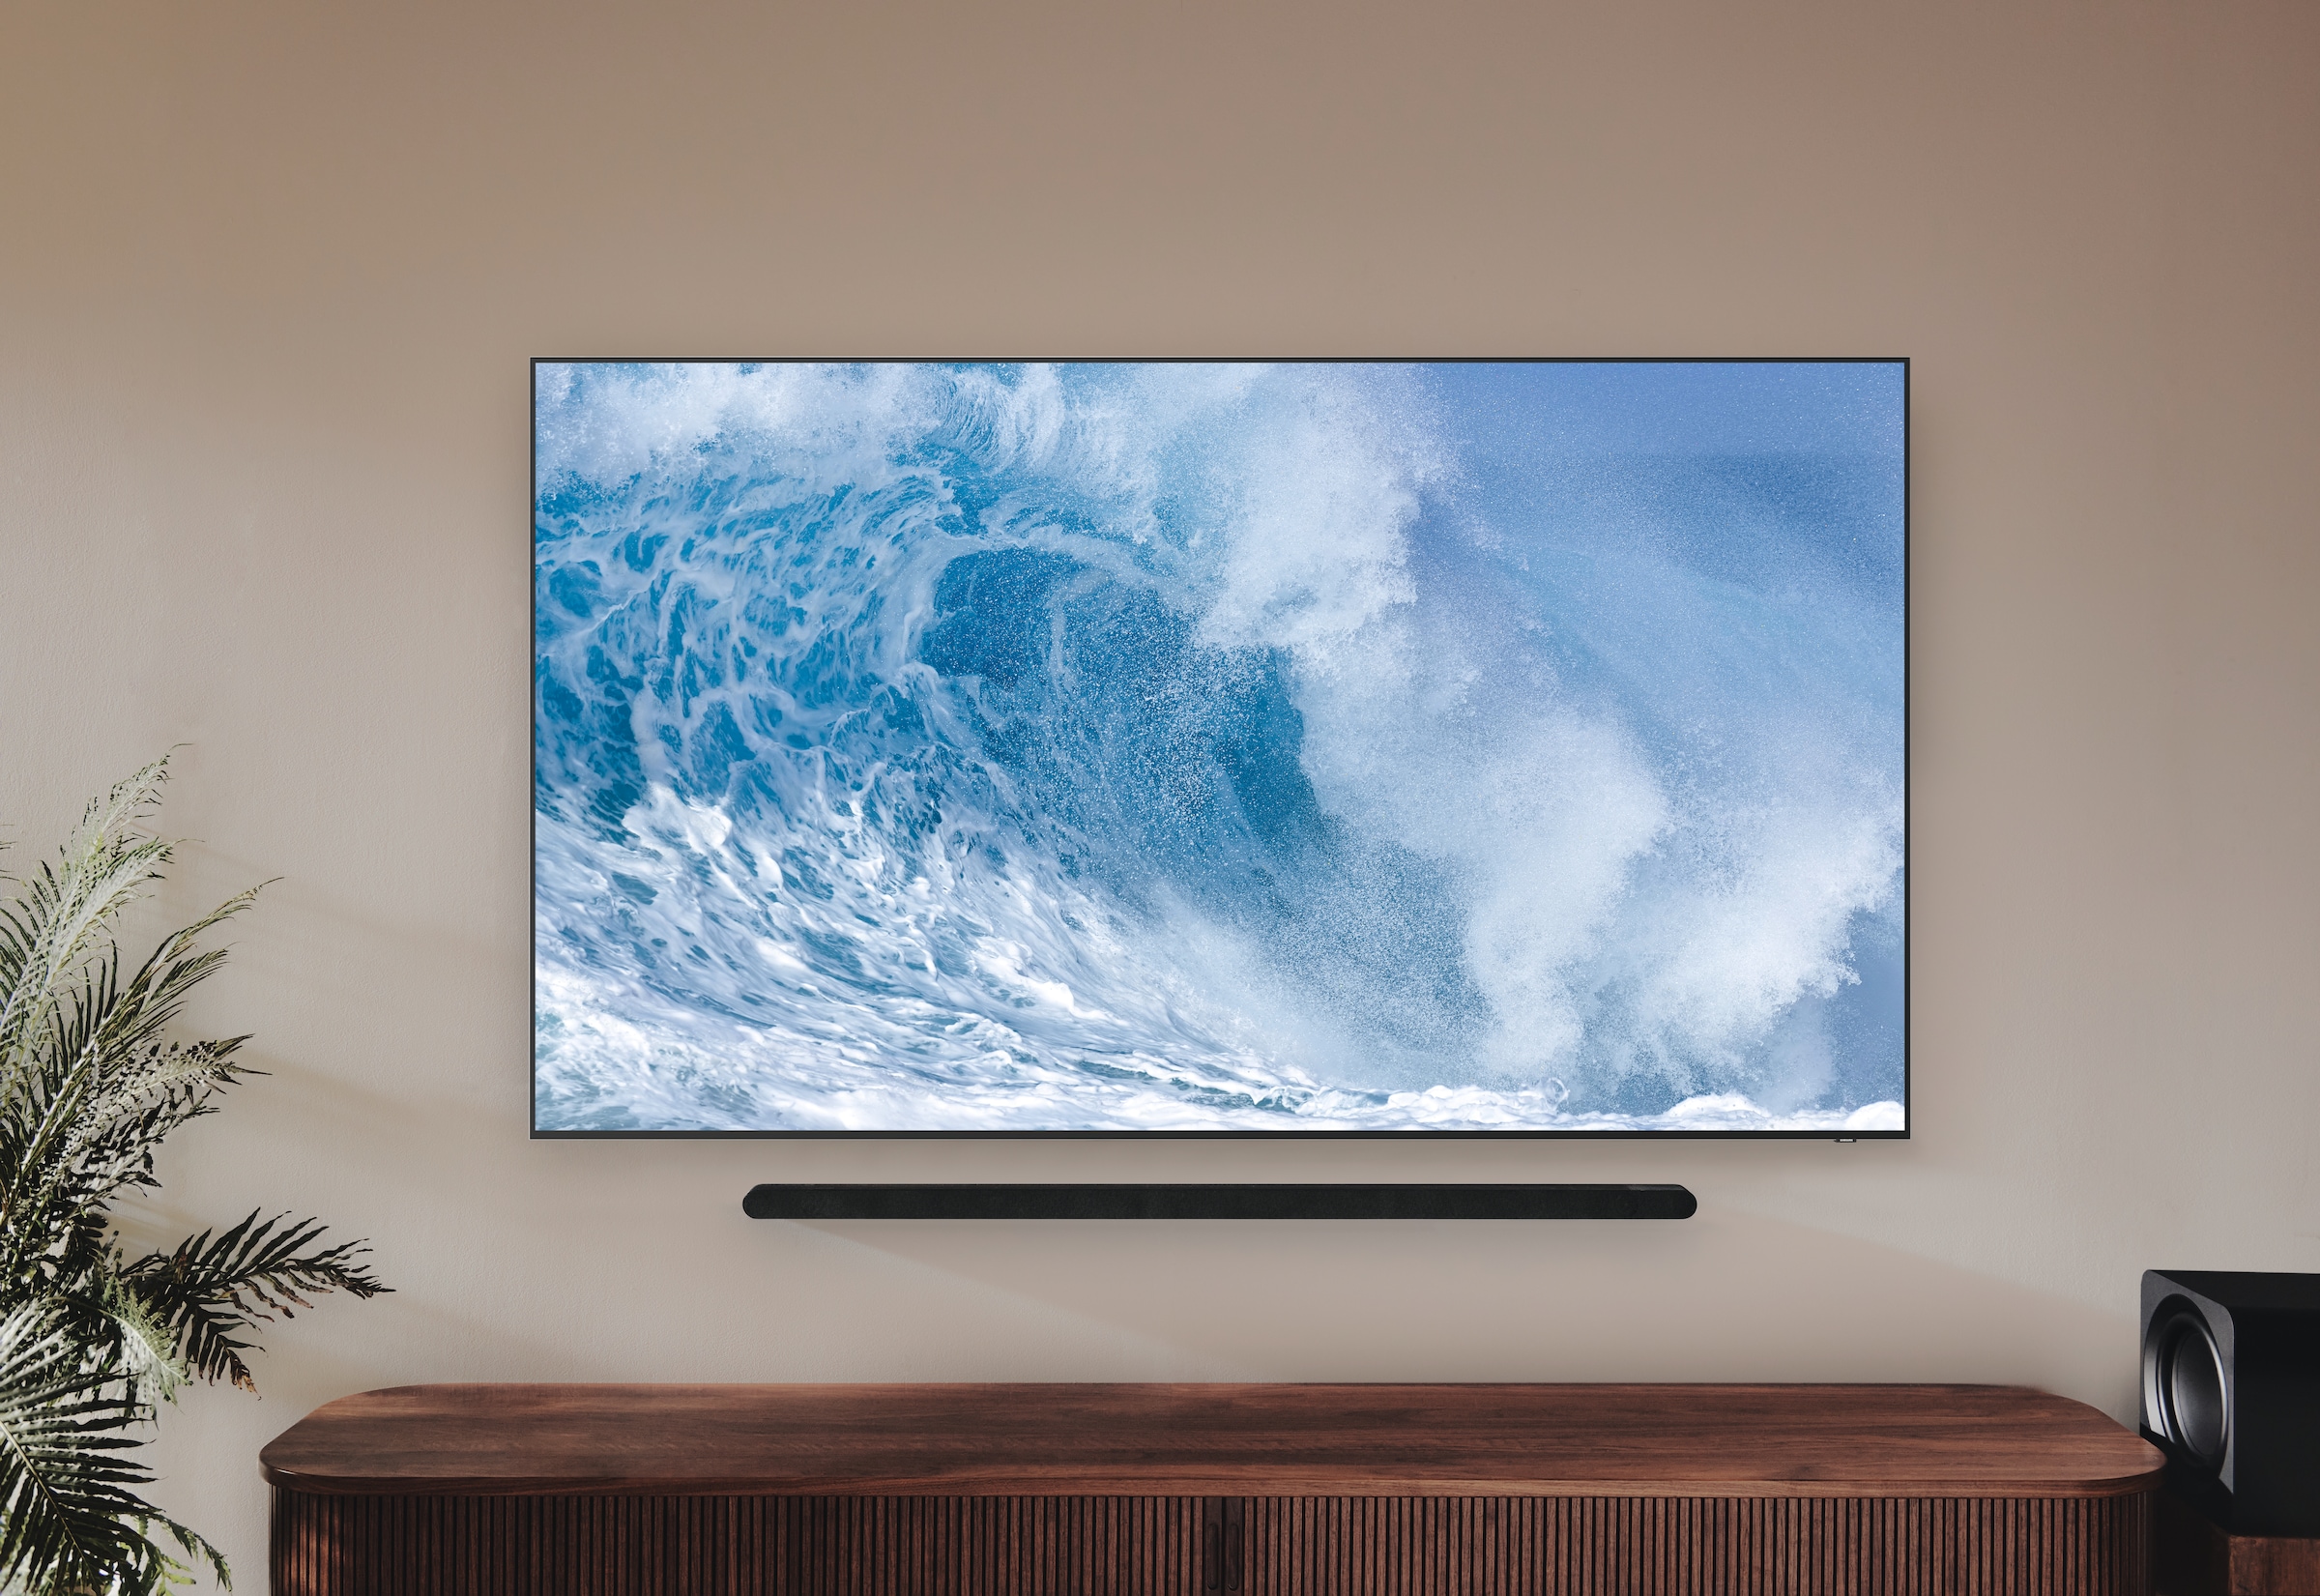 QLED-Fernseher Smart-TV-Google Lite Neural Samsung Quantum 8K Matrix kaufen 138 »55\